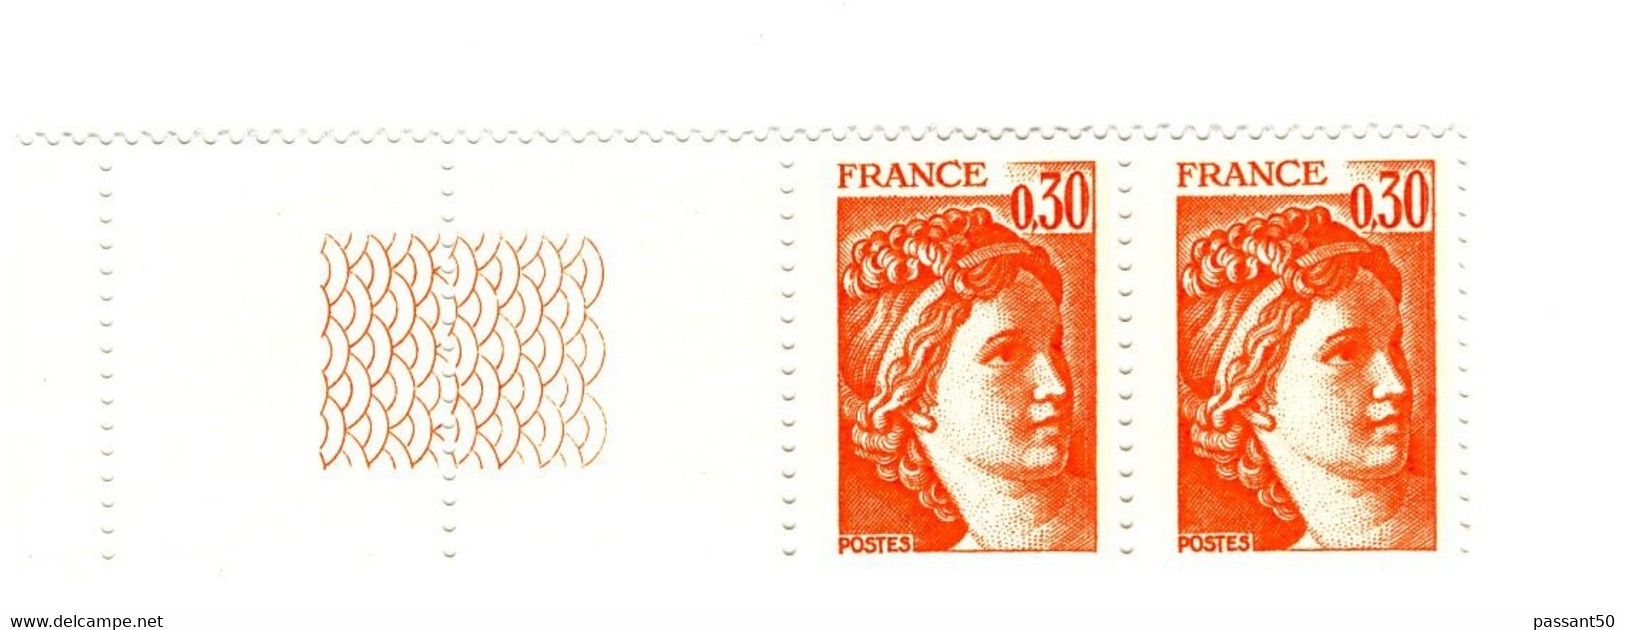 Sabine 0.30fr Orange YT 1968g En Paire Bord De Feuille Guilloché. Superbe Et Pas Courant, Voir Le Scan. Cote YT : 3 €. - Nuevos